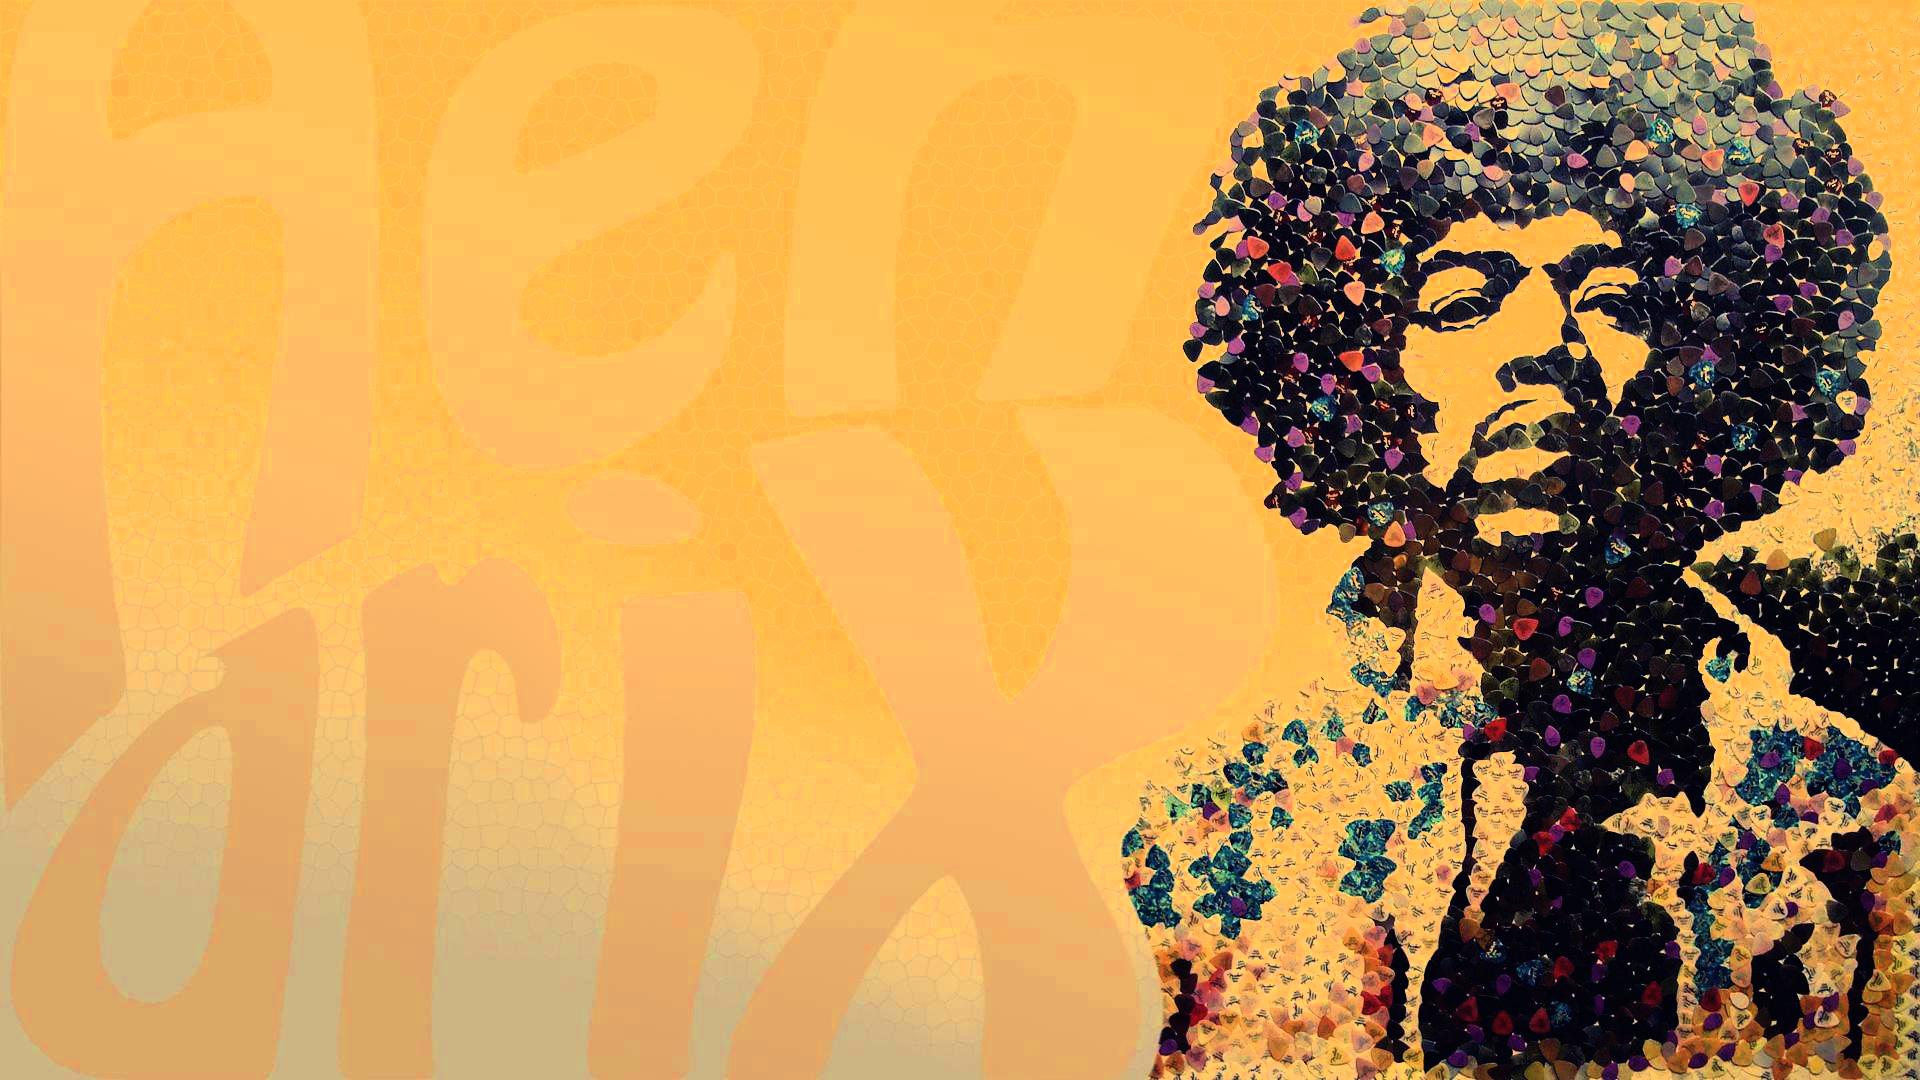 Jimi Hendrix Wallpaper For iPhone Wallpaperlepi